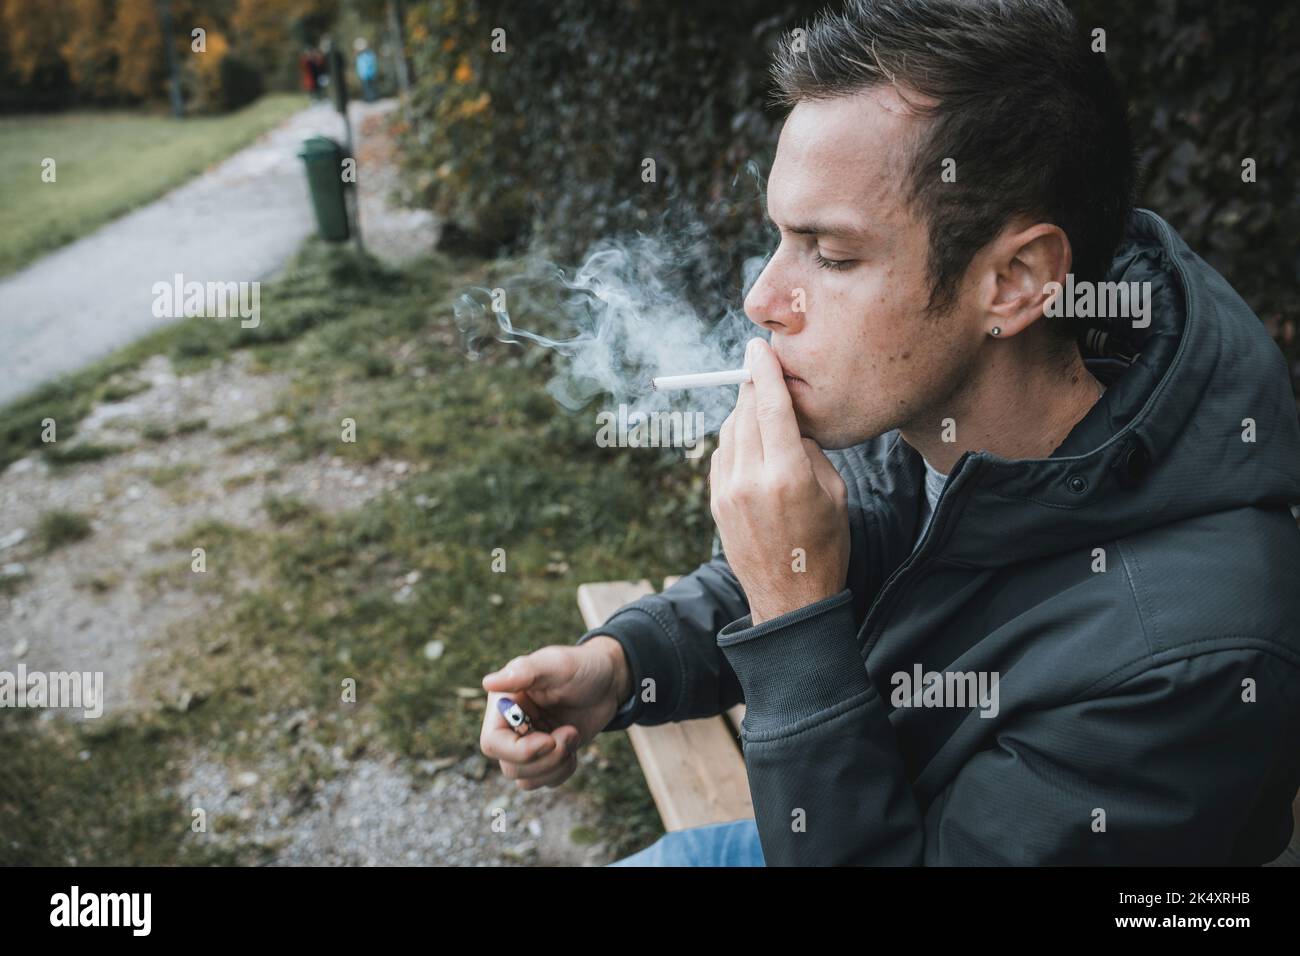 03 de octubre de 2022: Joven sentado en un banco del parque Fumando un cigarrillo. Fumador Enciende Un cigarrillo con encendedor para fumar Foto de stock